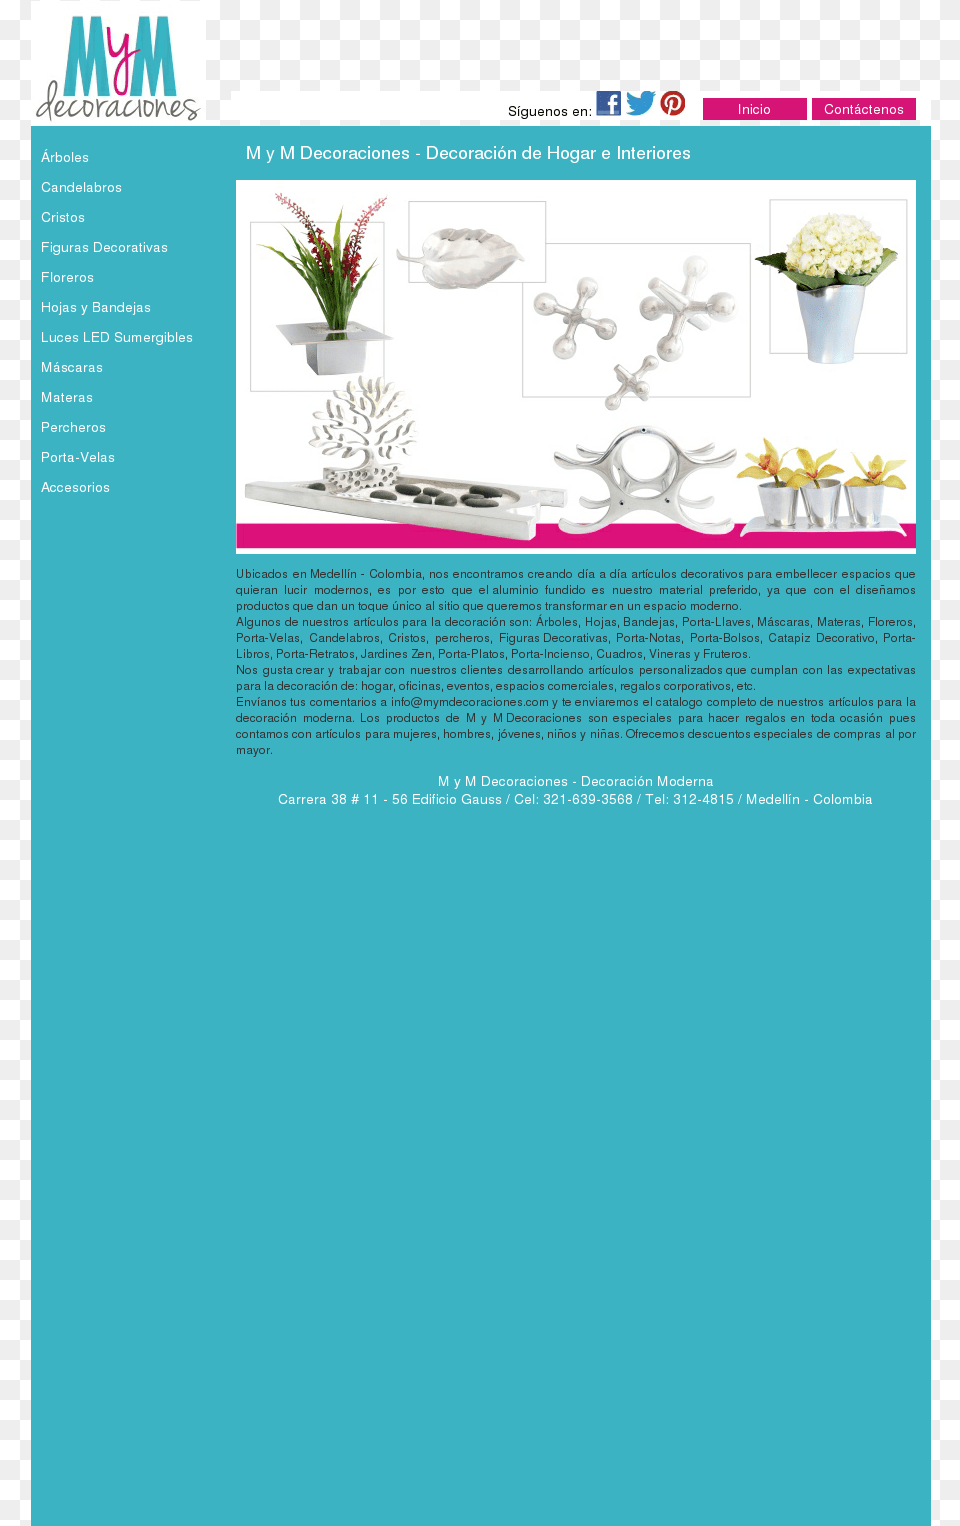 M Y M Decoraciones Competitors Revenue And Employees Web Page, File, Flower, Flower Arrangement, Plant Png